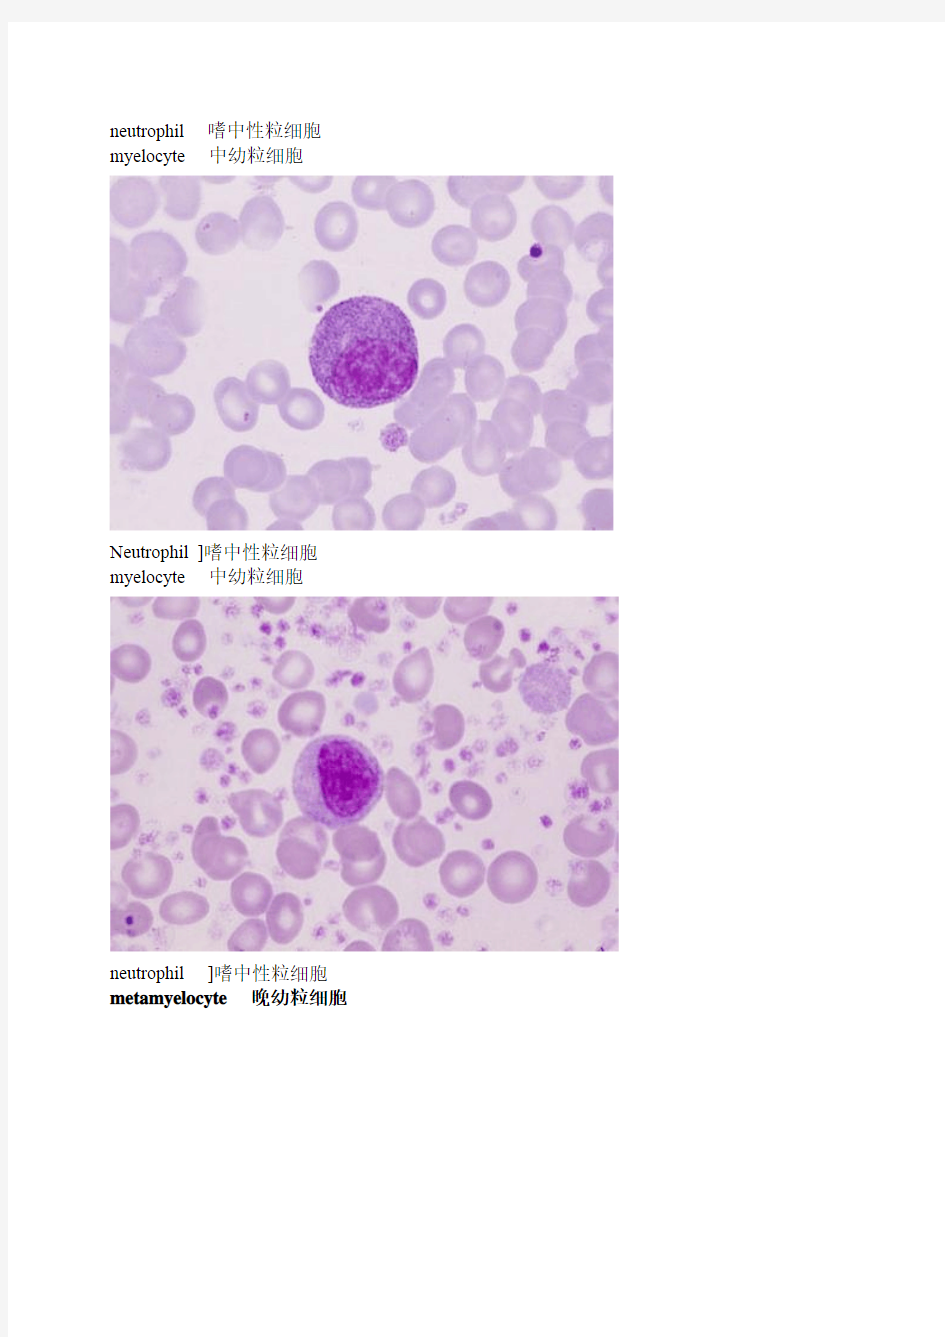 外国网站高清血细胞图谱